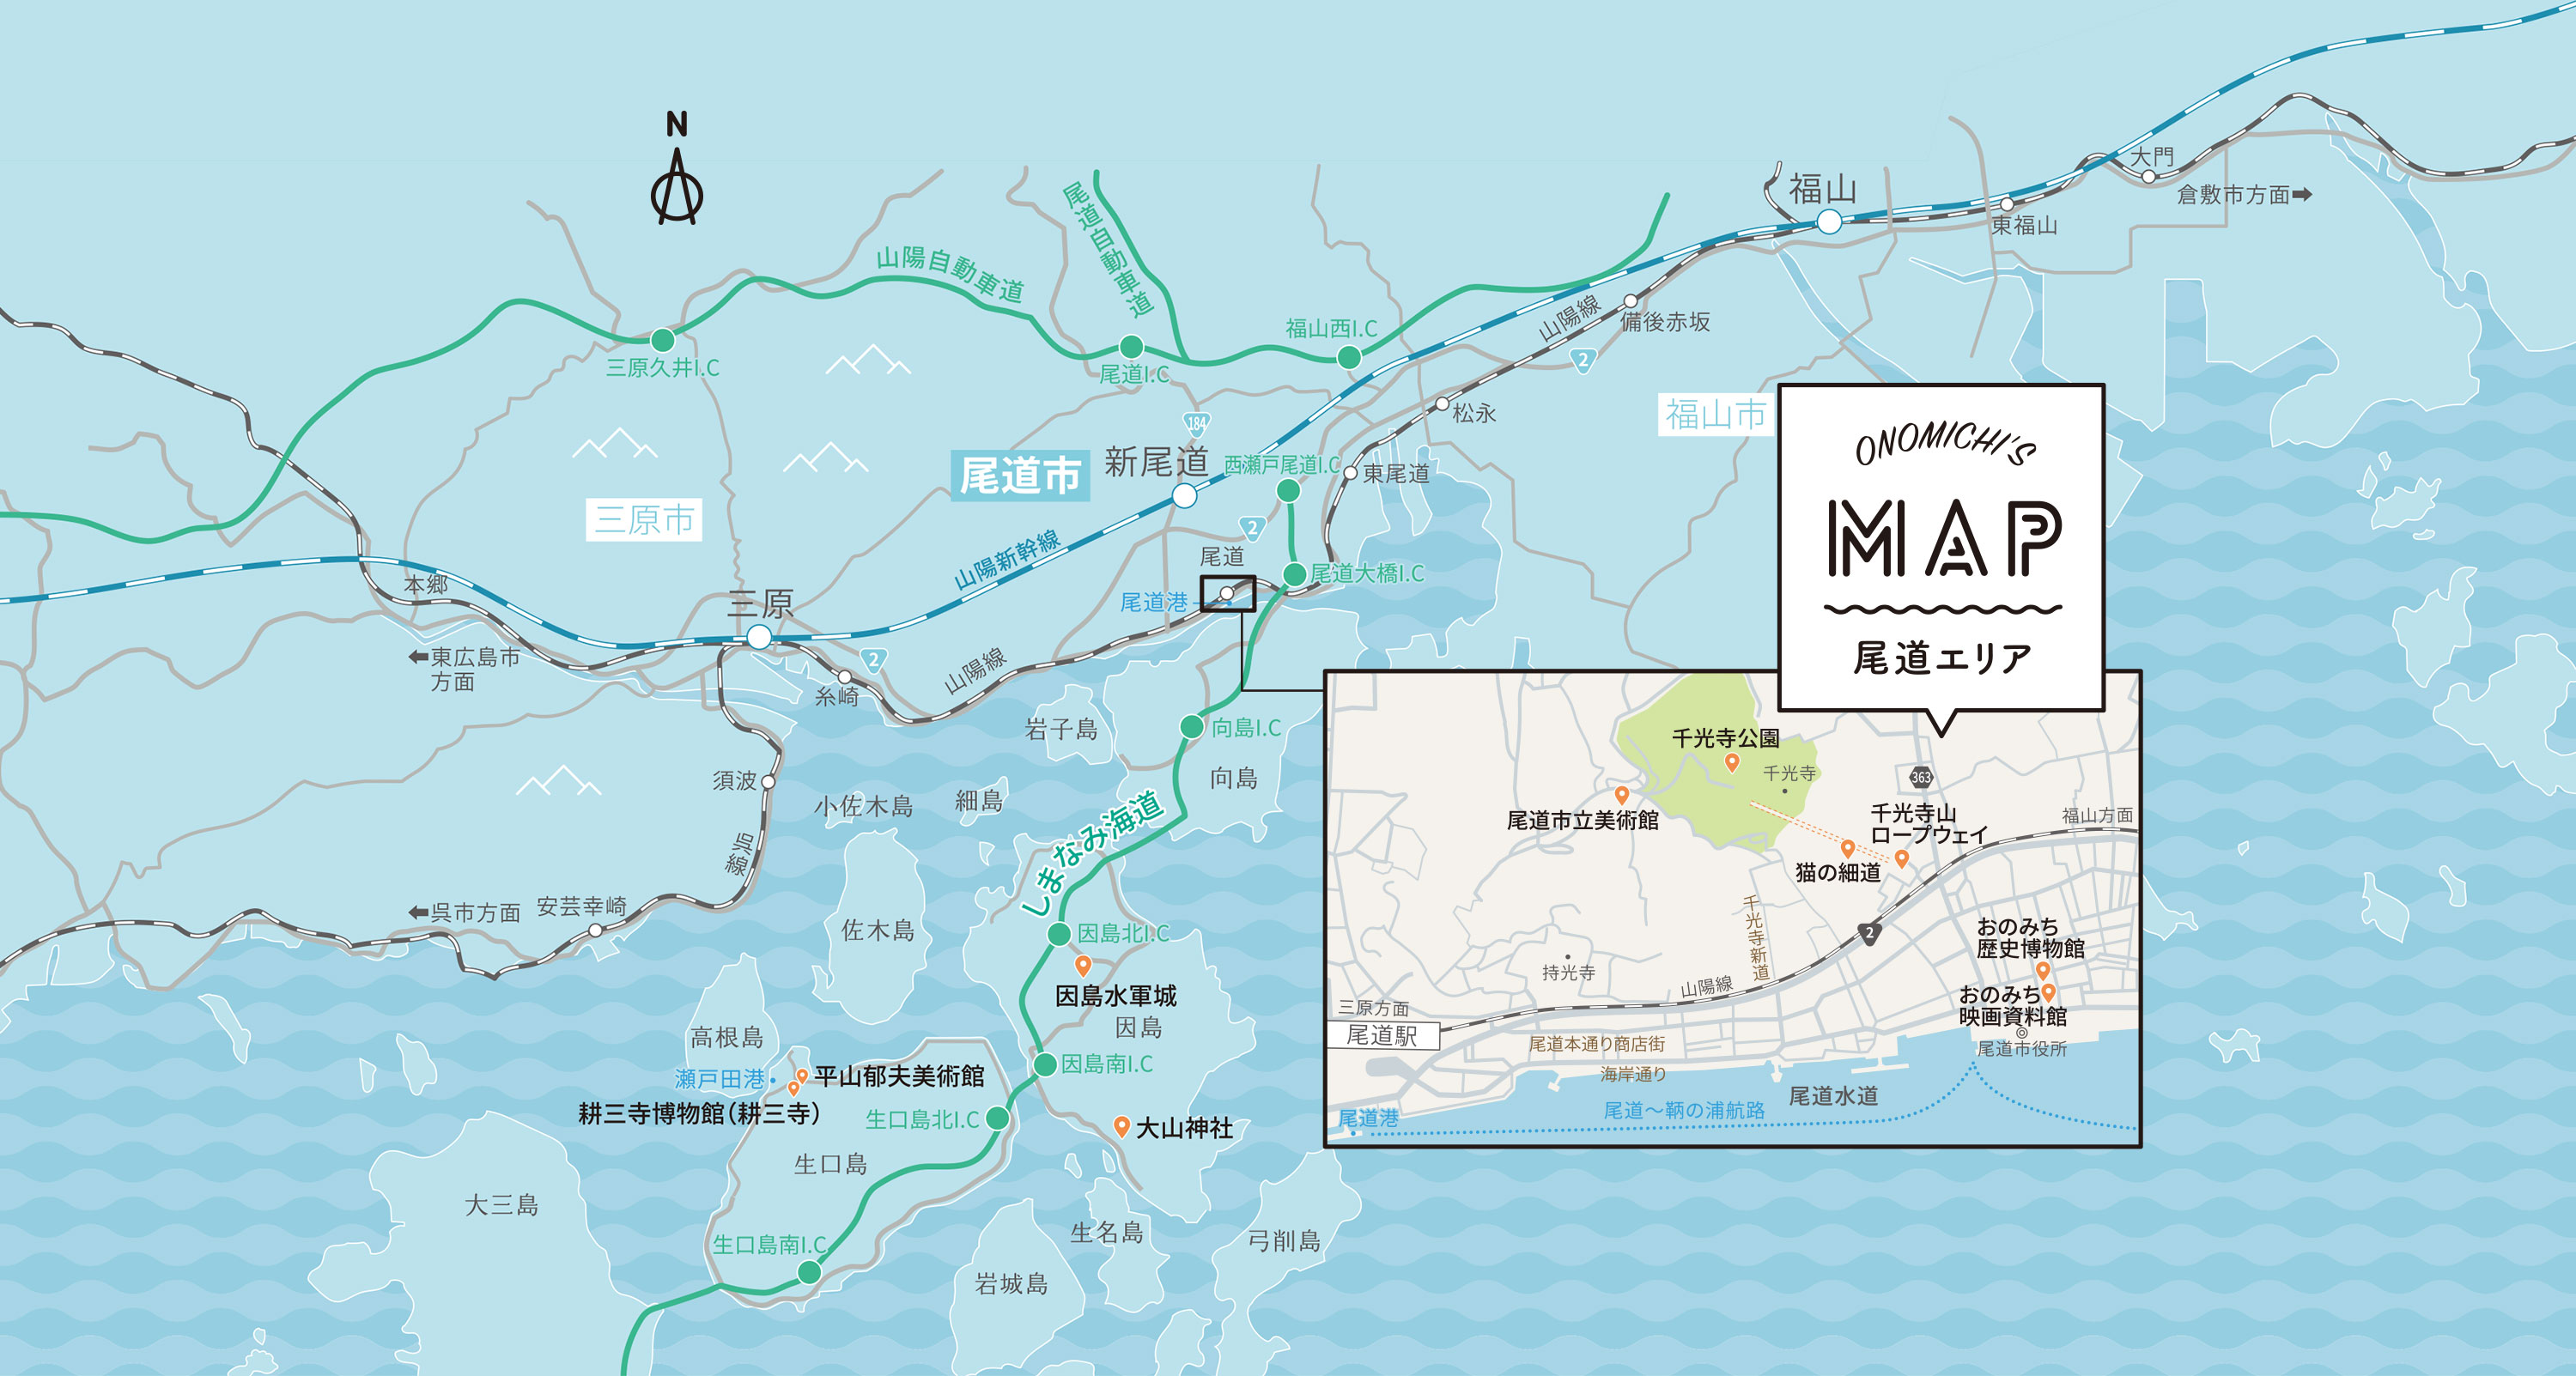 尾道エリア ONOMICHI'S MAP